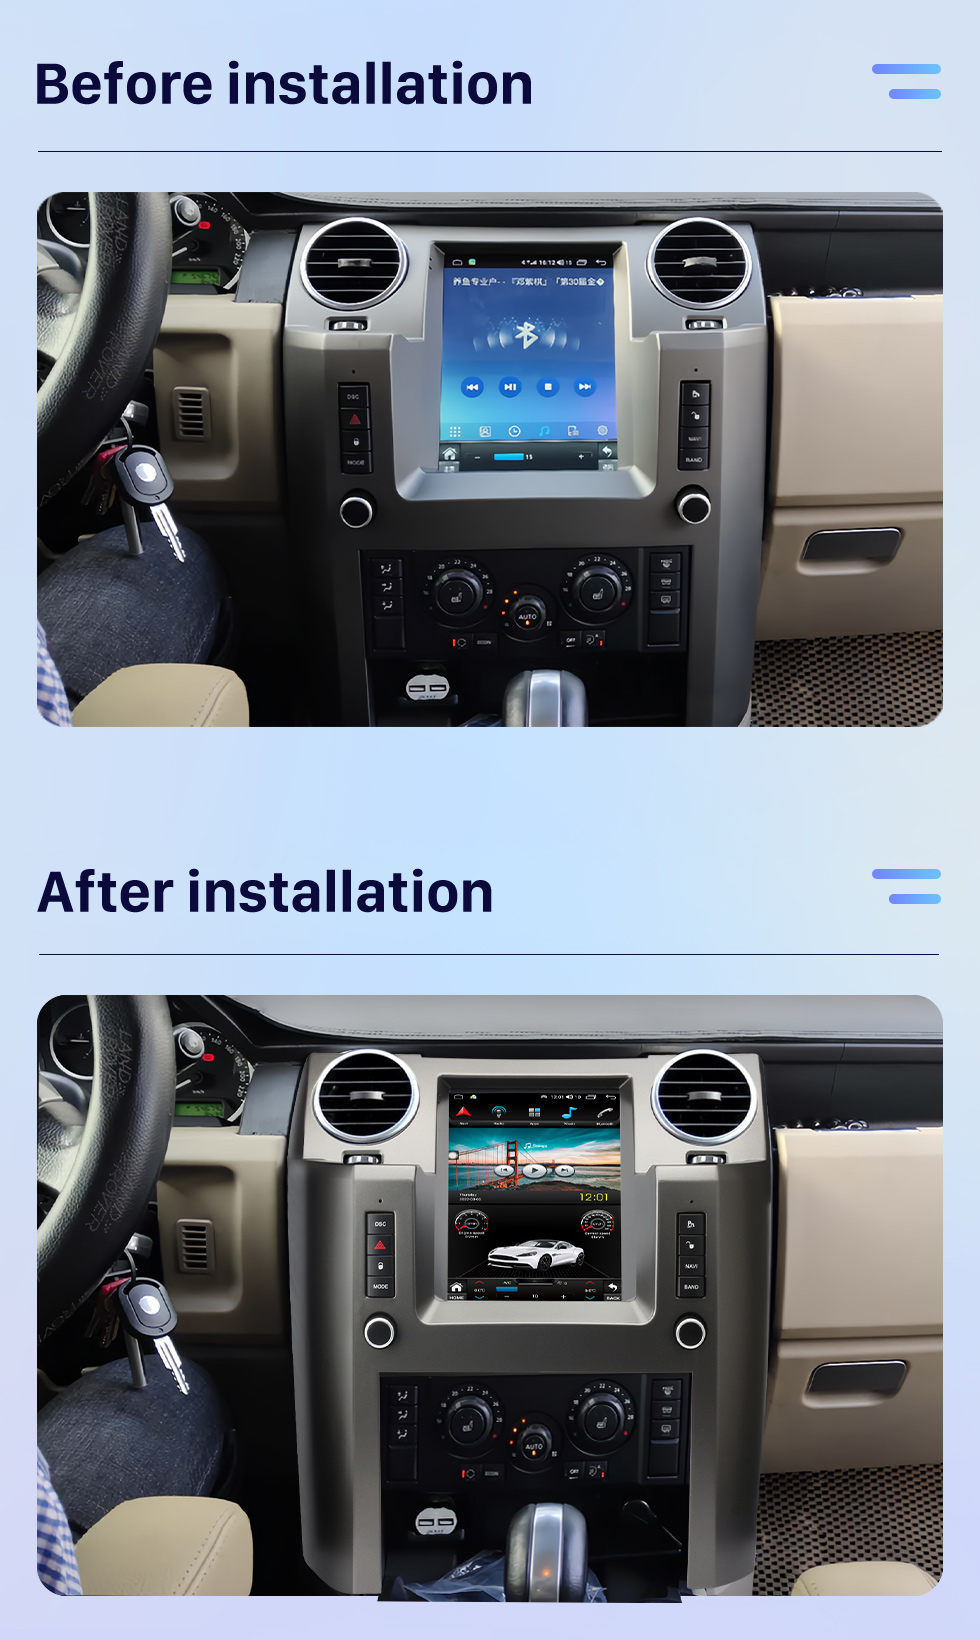 Seicane 9,7 polegadas 2004-2009 Land Rover Discoverer 3 Android 10.0 Unidade principal Navegação GPS Rádio USB com USB Bluetooth WIFI Suporte DVR OBD2 TPMS AHD Camera